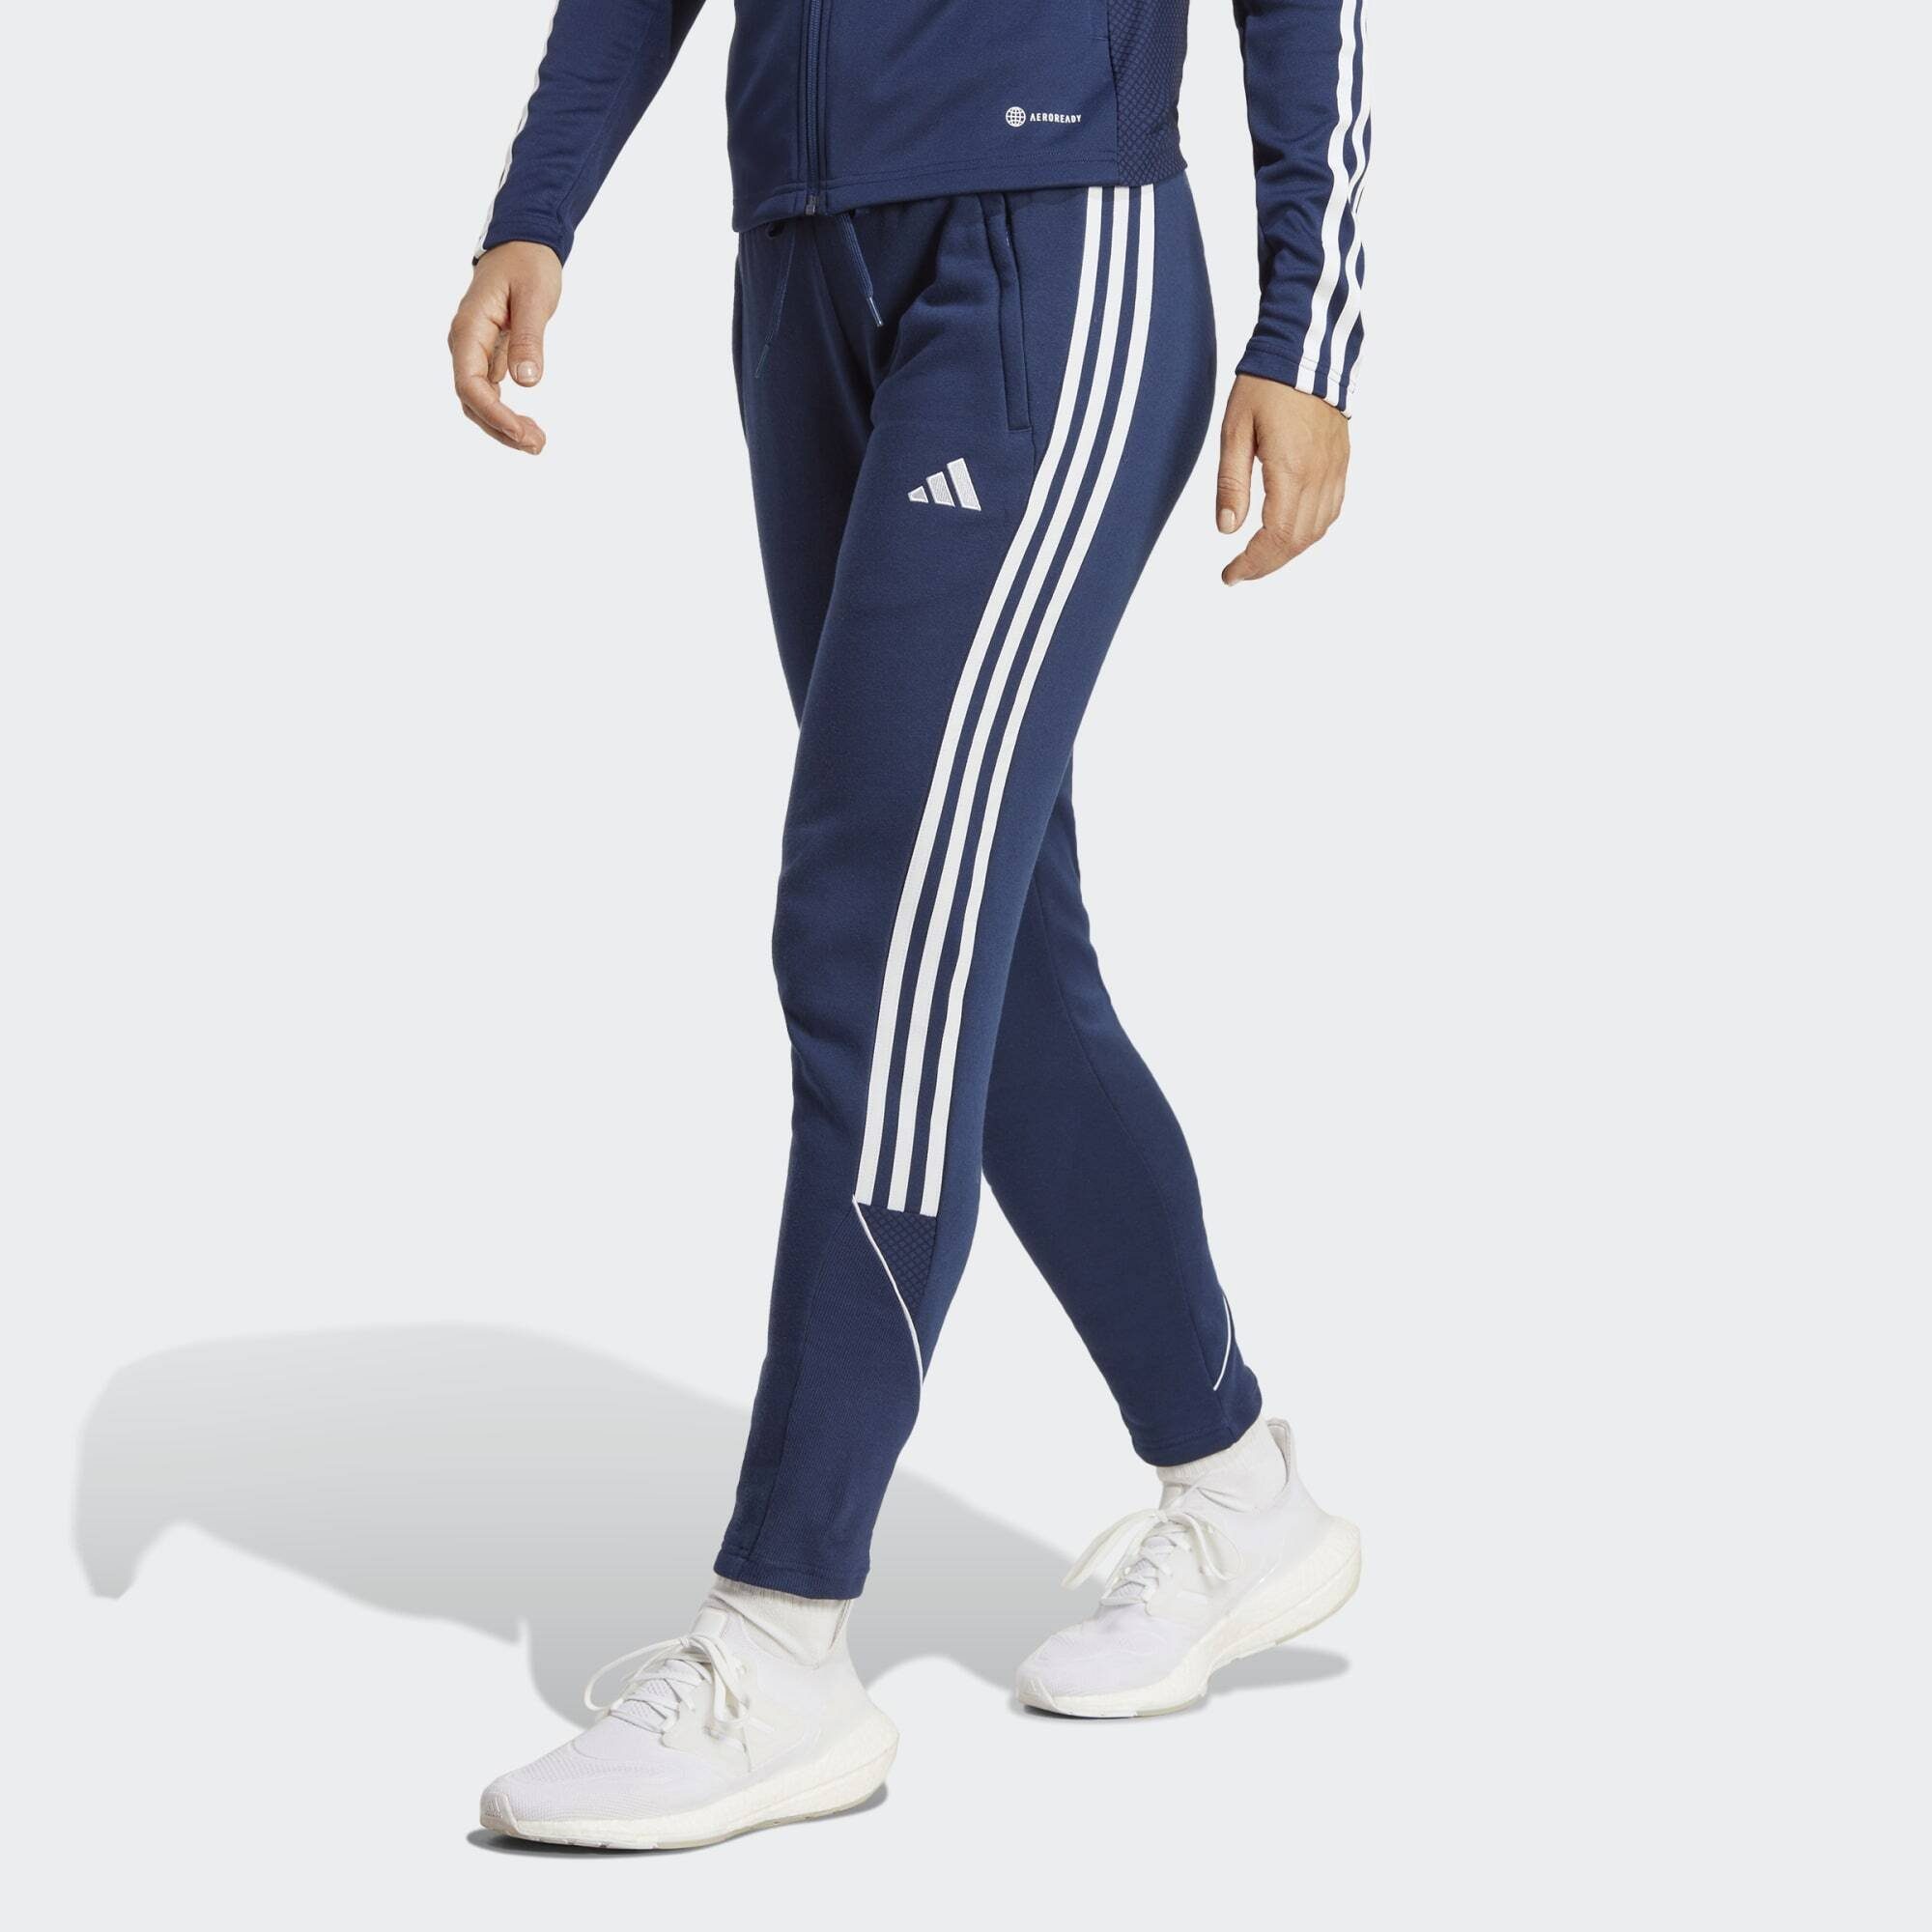 Blaue adidas Damen Jogginghosen online kaufen | OTTO